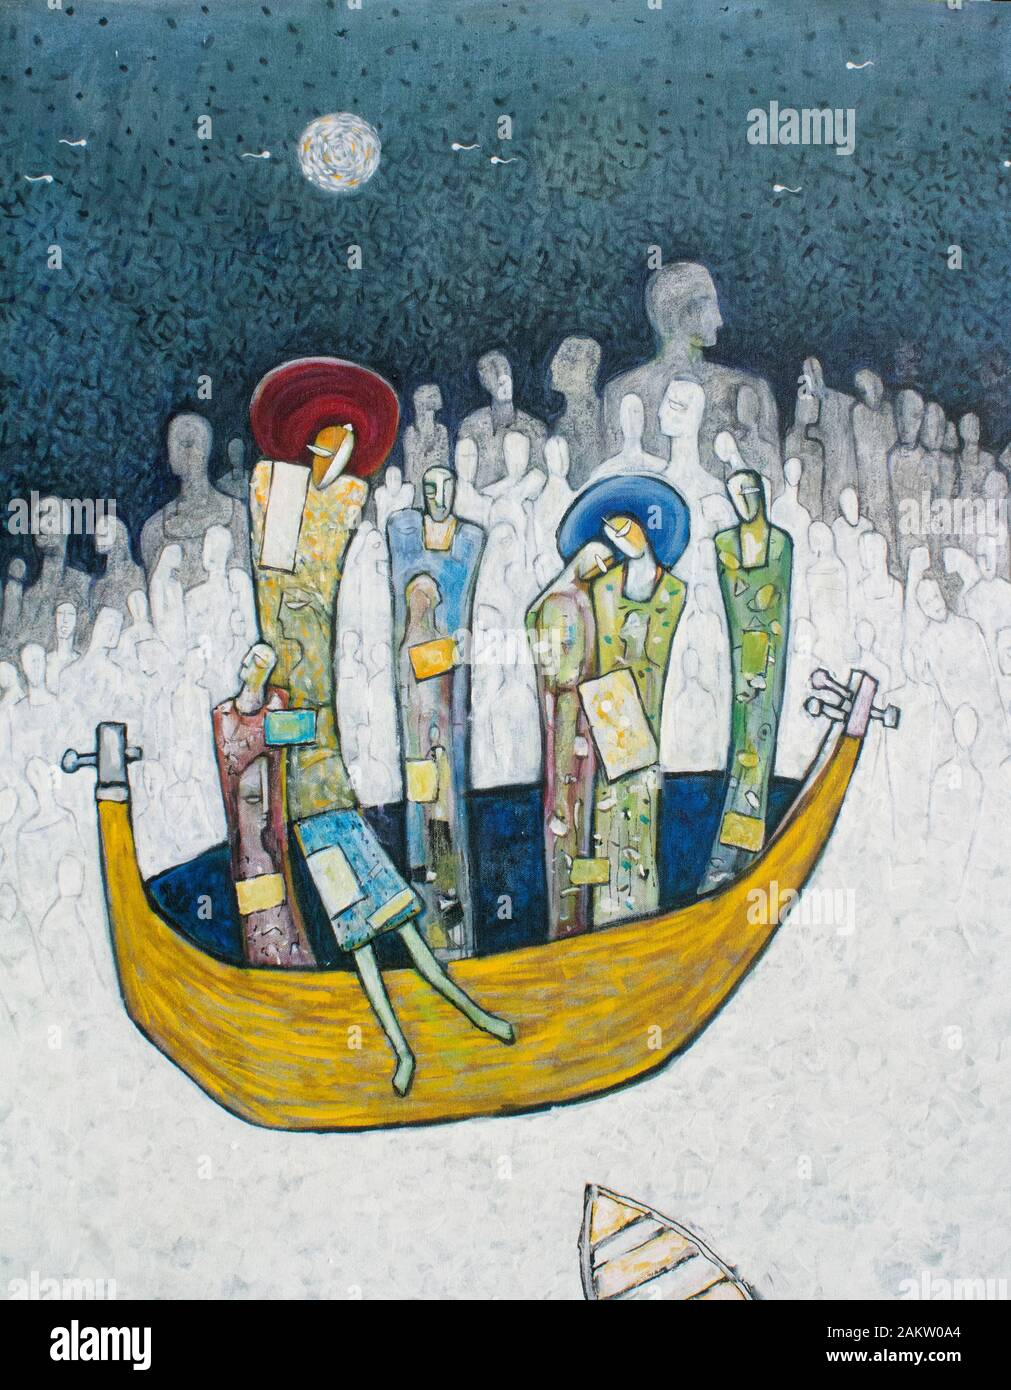 Pittura surreale su tela. Le persone astratte galleggiano nella barca nel mare delle anime umane Foto Stock